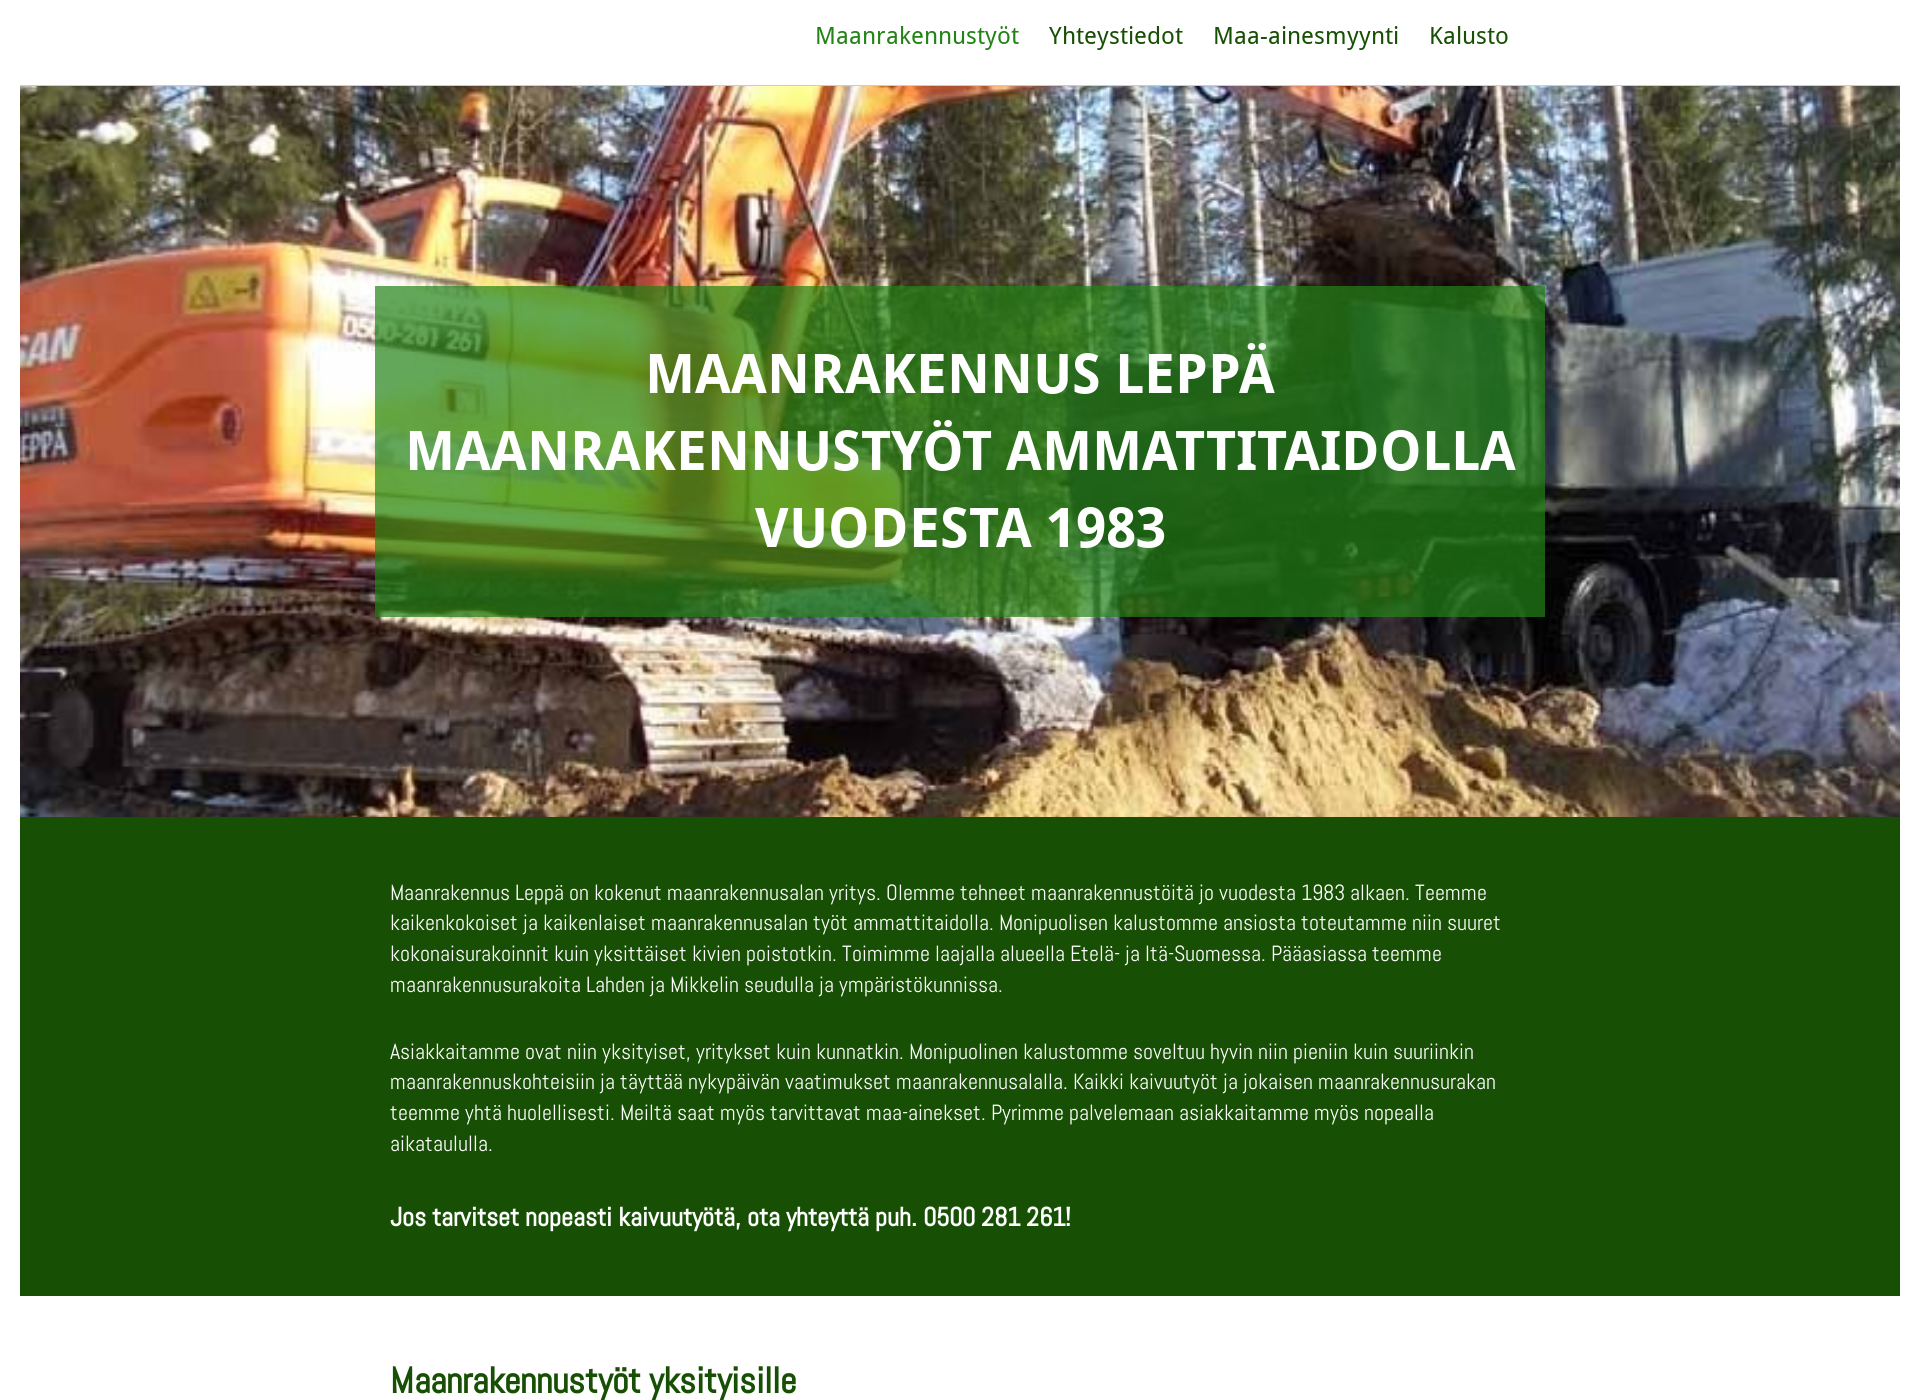 Näyttökuva maanrakennusleppa.fi